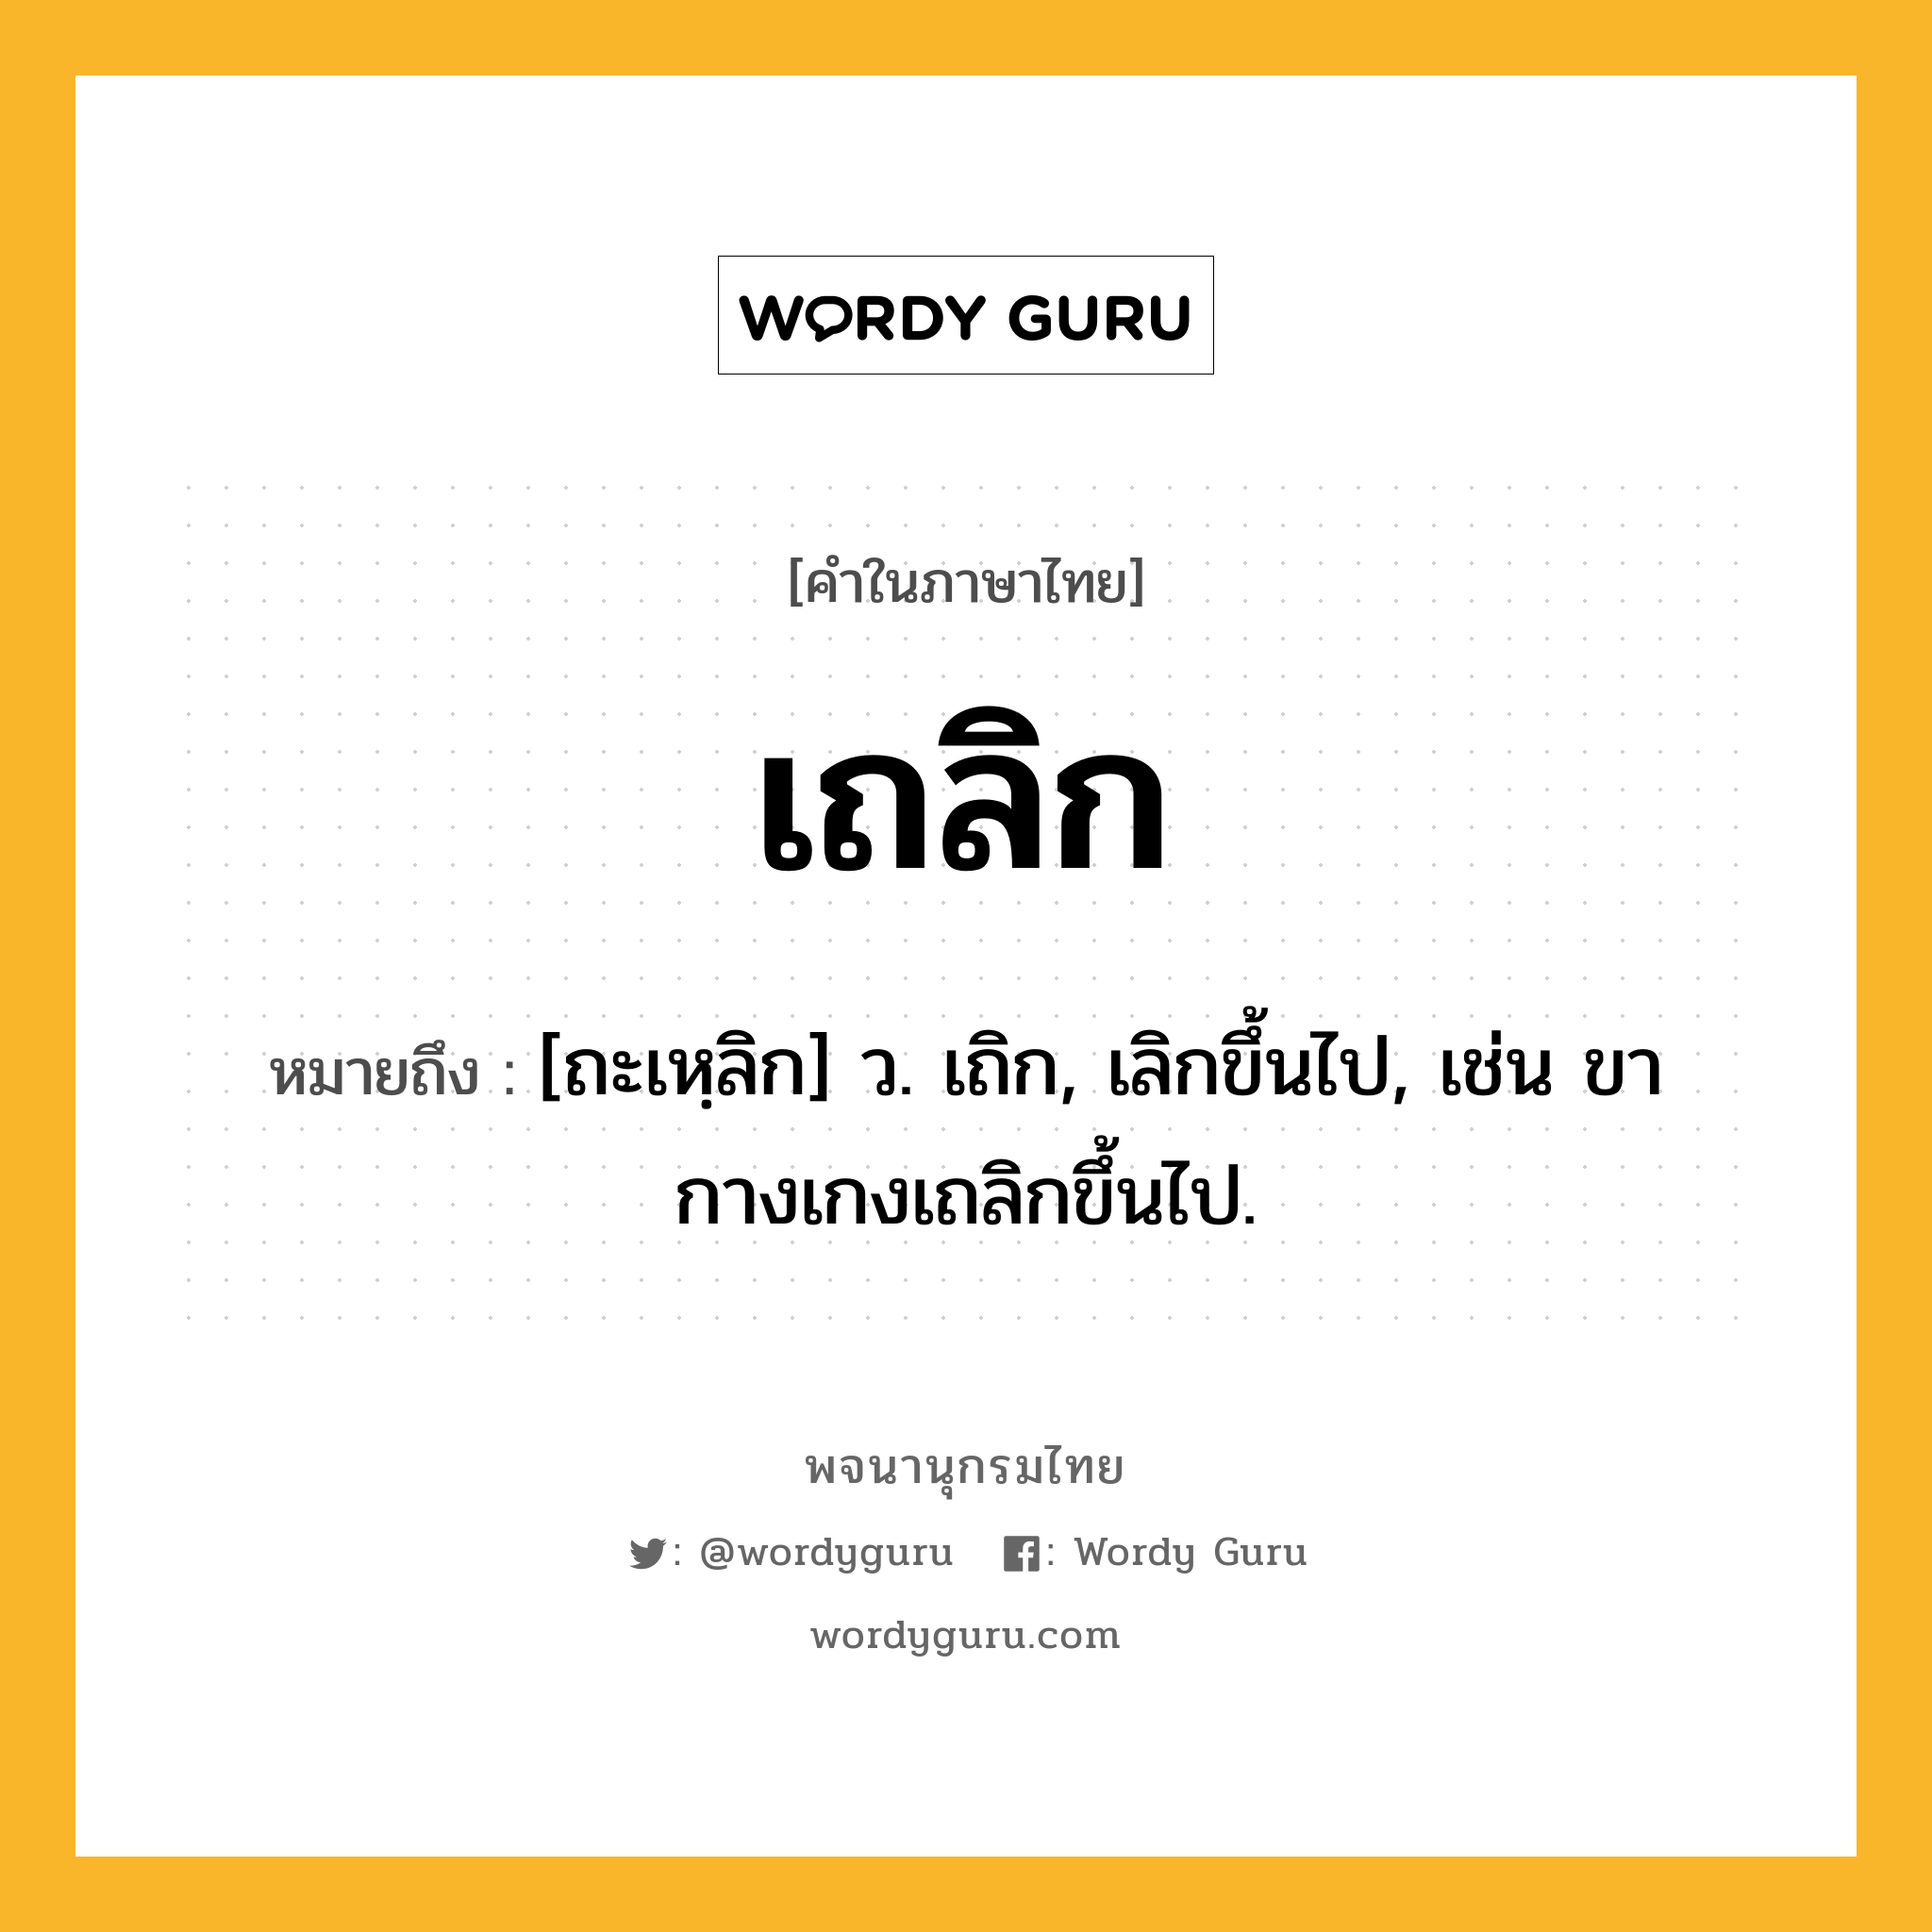 เถลิก ความหมาย หมายถึงอะไร?, คำในภาษาไทย เถลิก หมายถึง [ถะเหฺลิก] ว. เถิก, เลิกขึ้นไป, เช่น ขากางเกงเถลิกขึ้นไป.